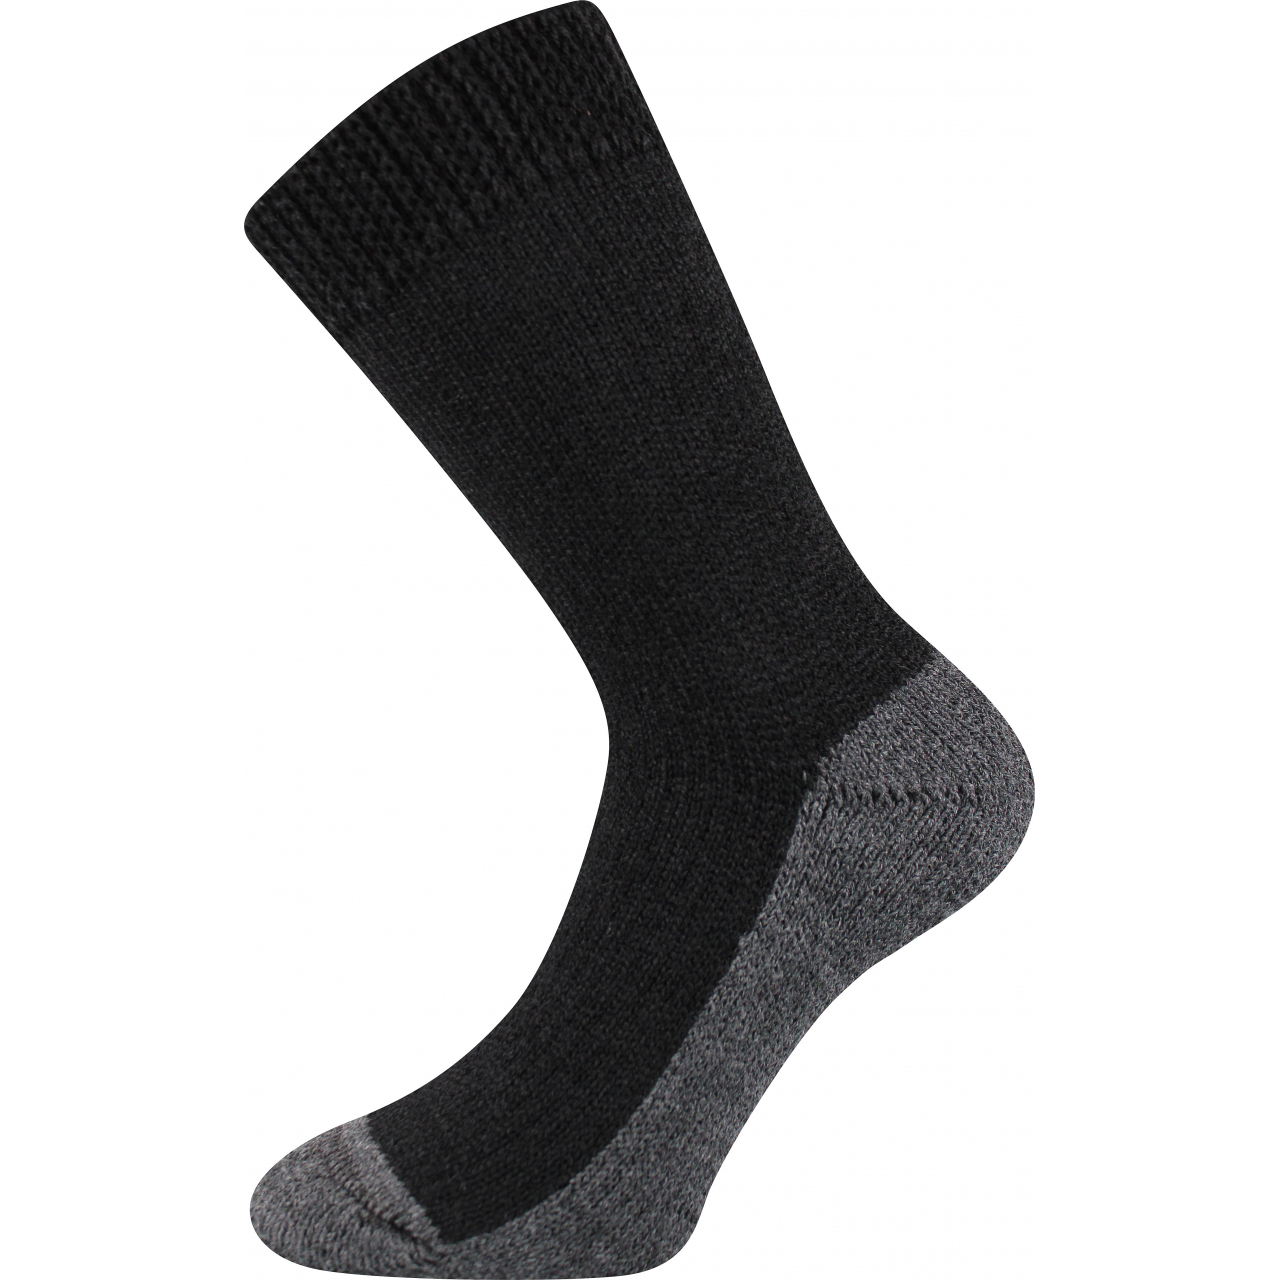 Ponožky unisex Boma Spací - černé, 39-42